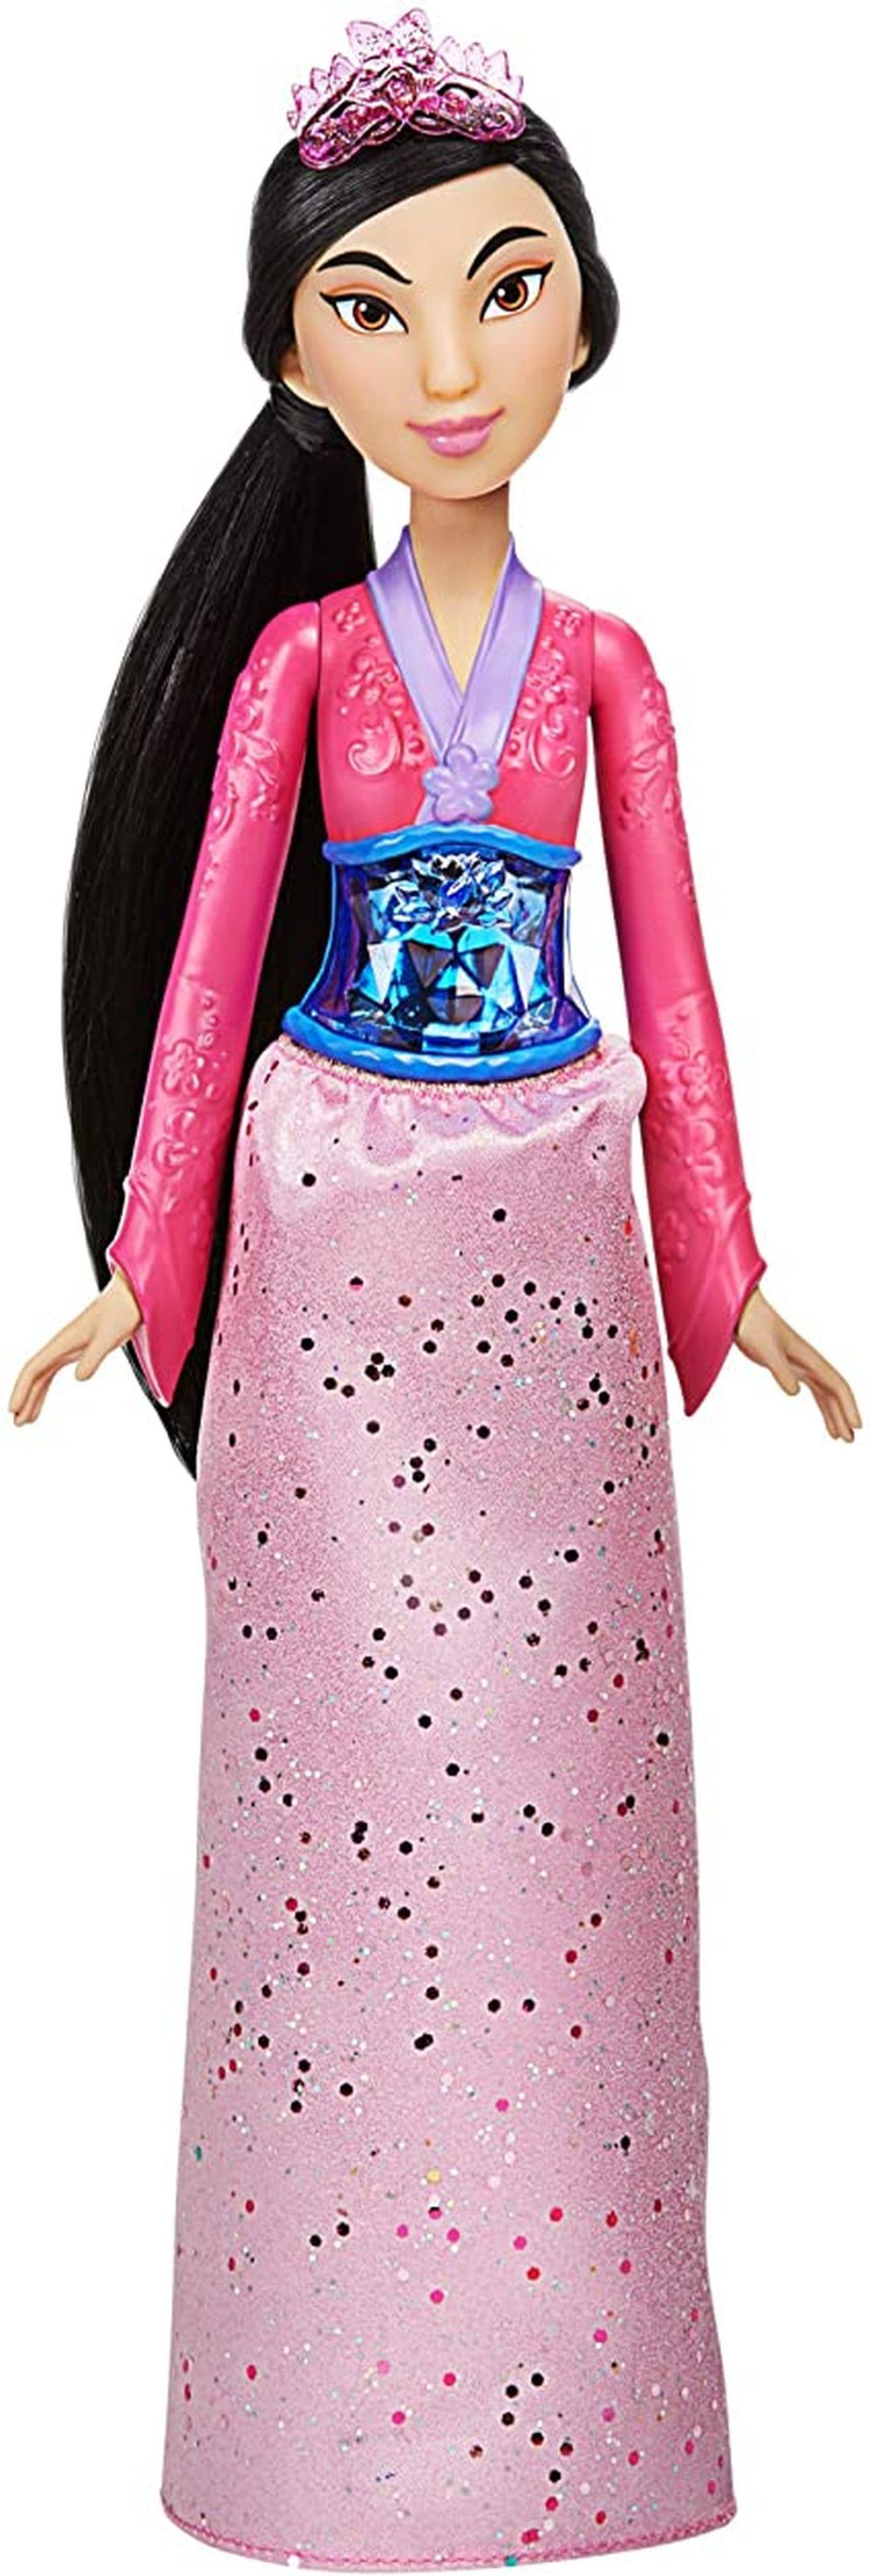 HASBRO Mulan Royal Shimmer Disney Princess Doll - 